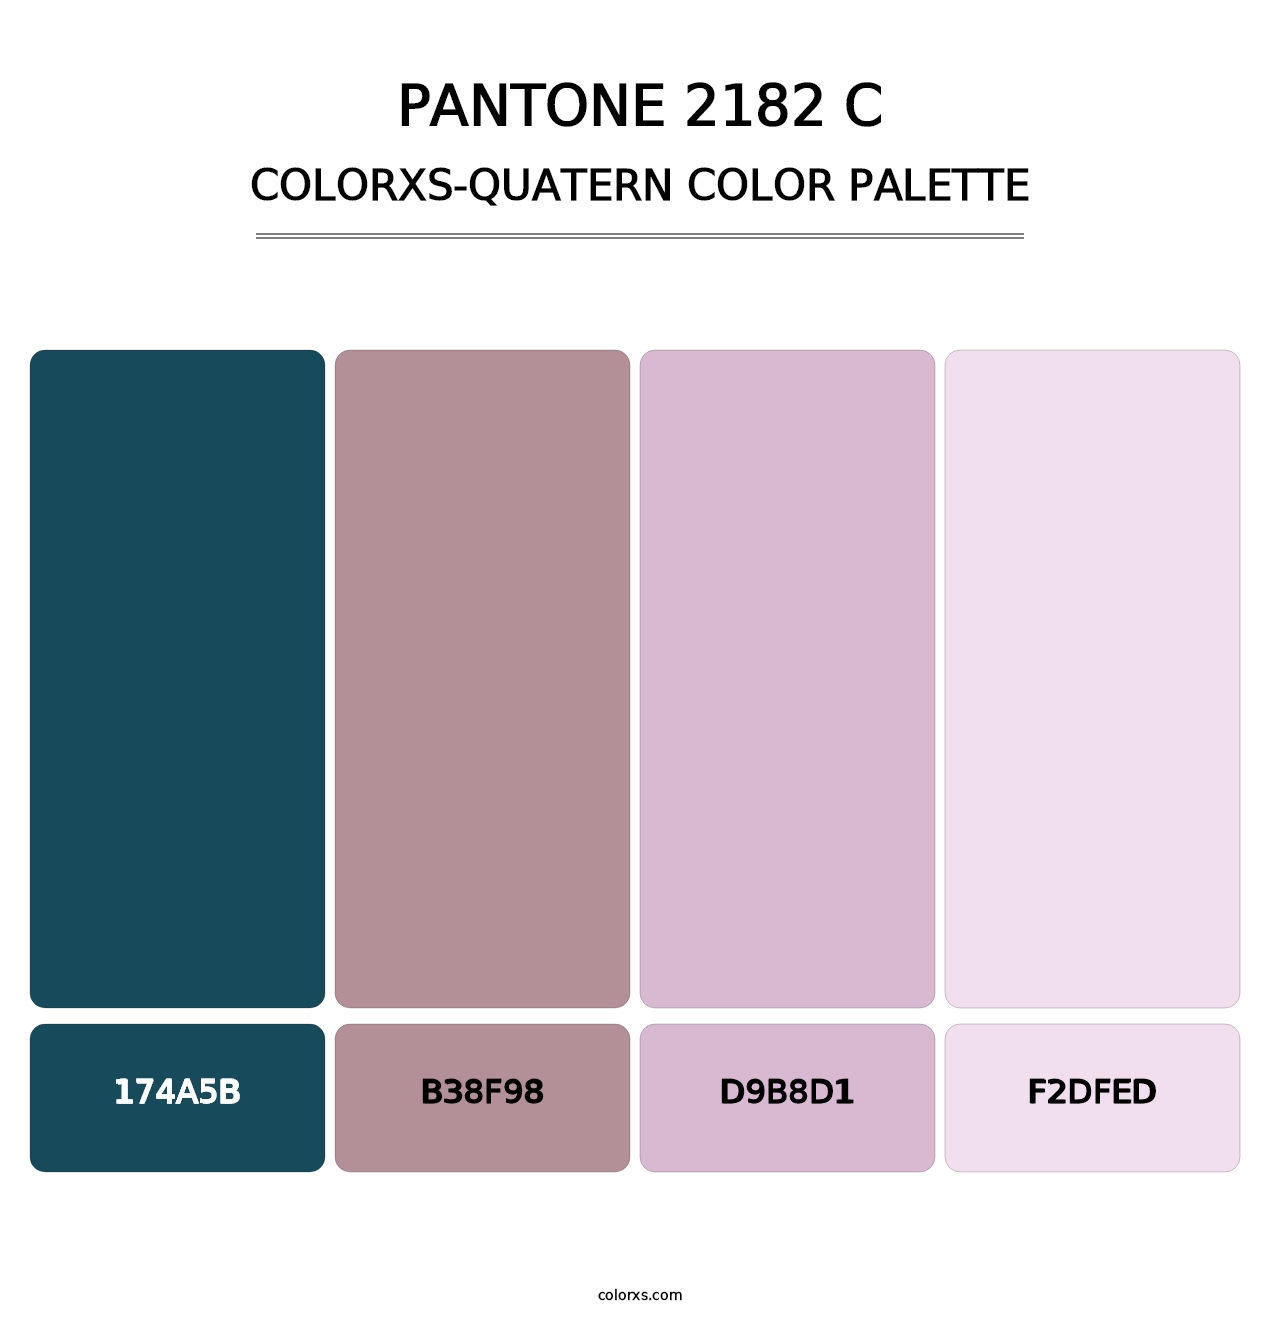 PANTONE 2182 C - Colorxs Quatern Palette